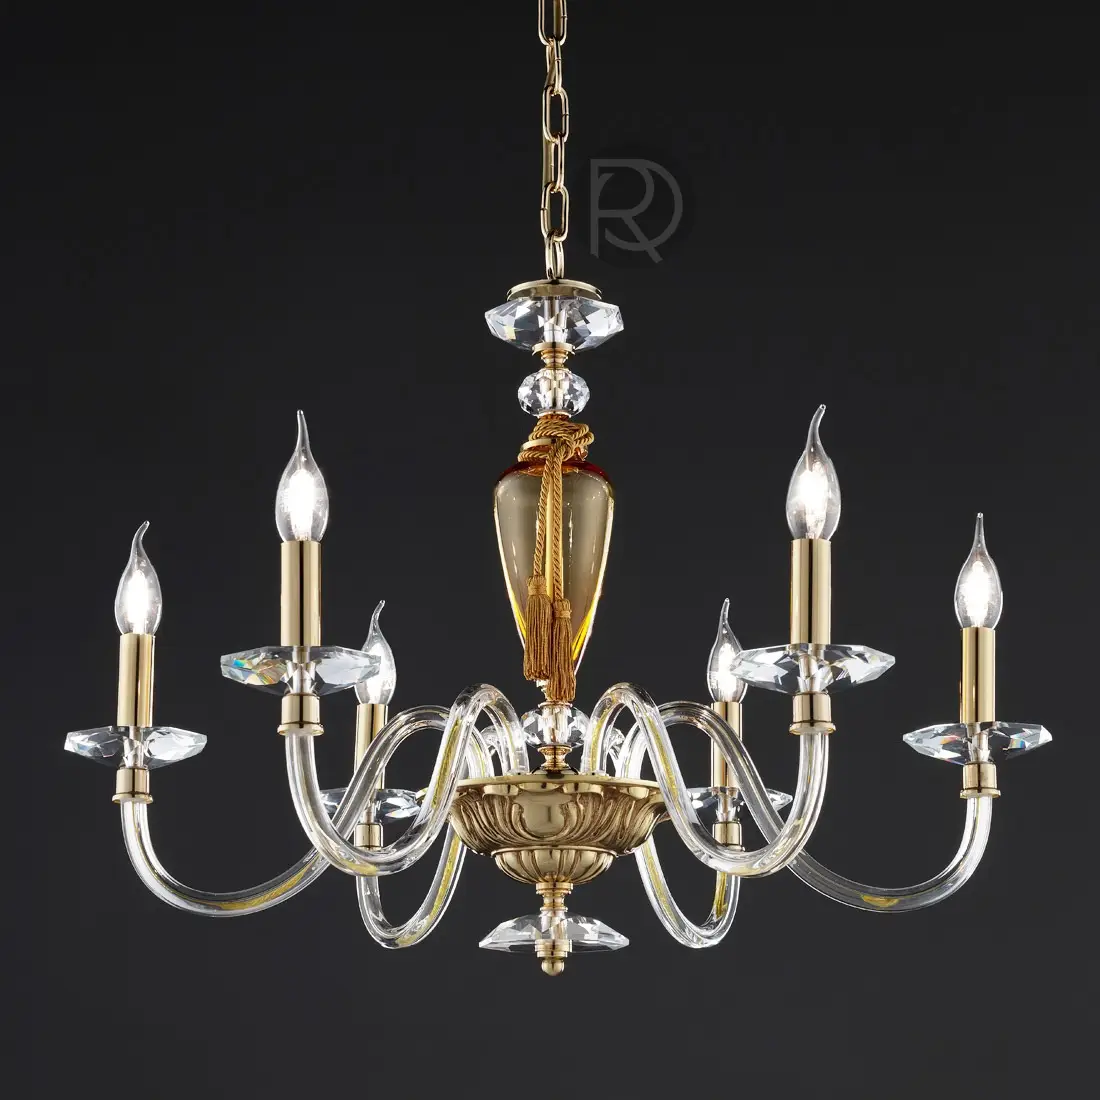 CHIARA chandelier by Euroluce